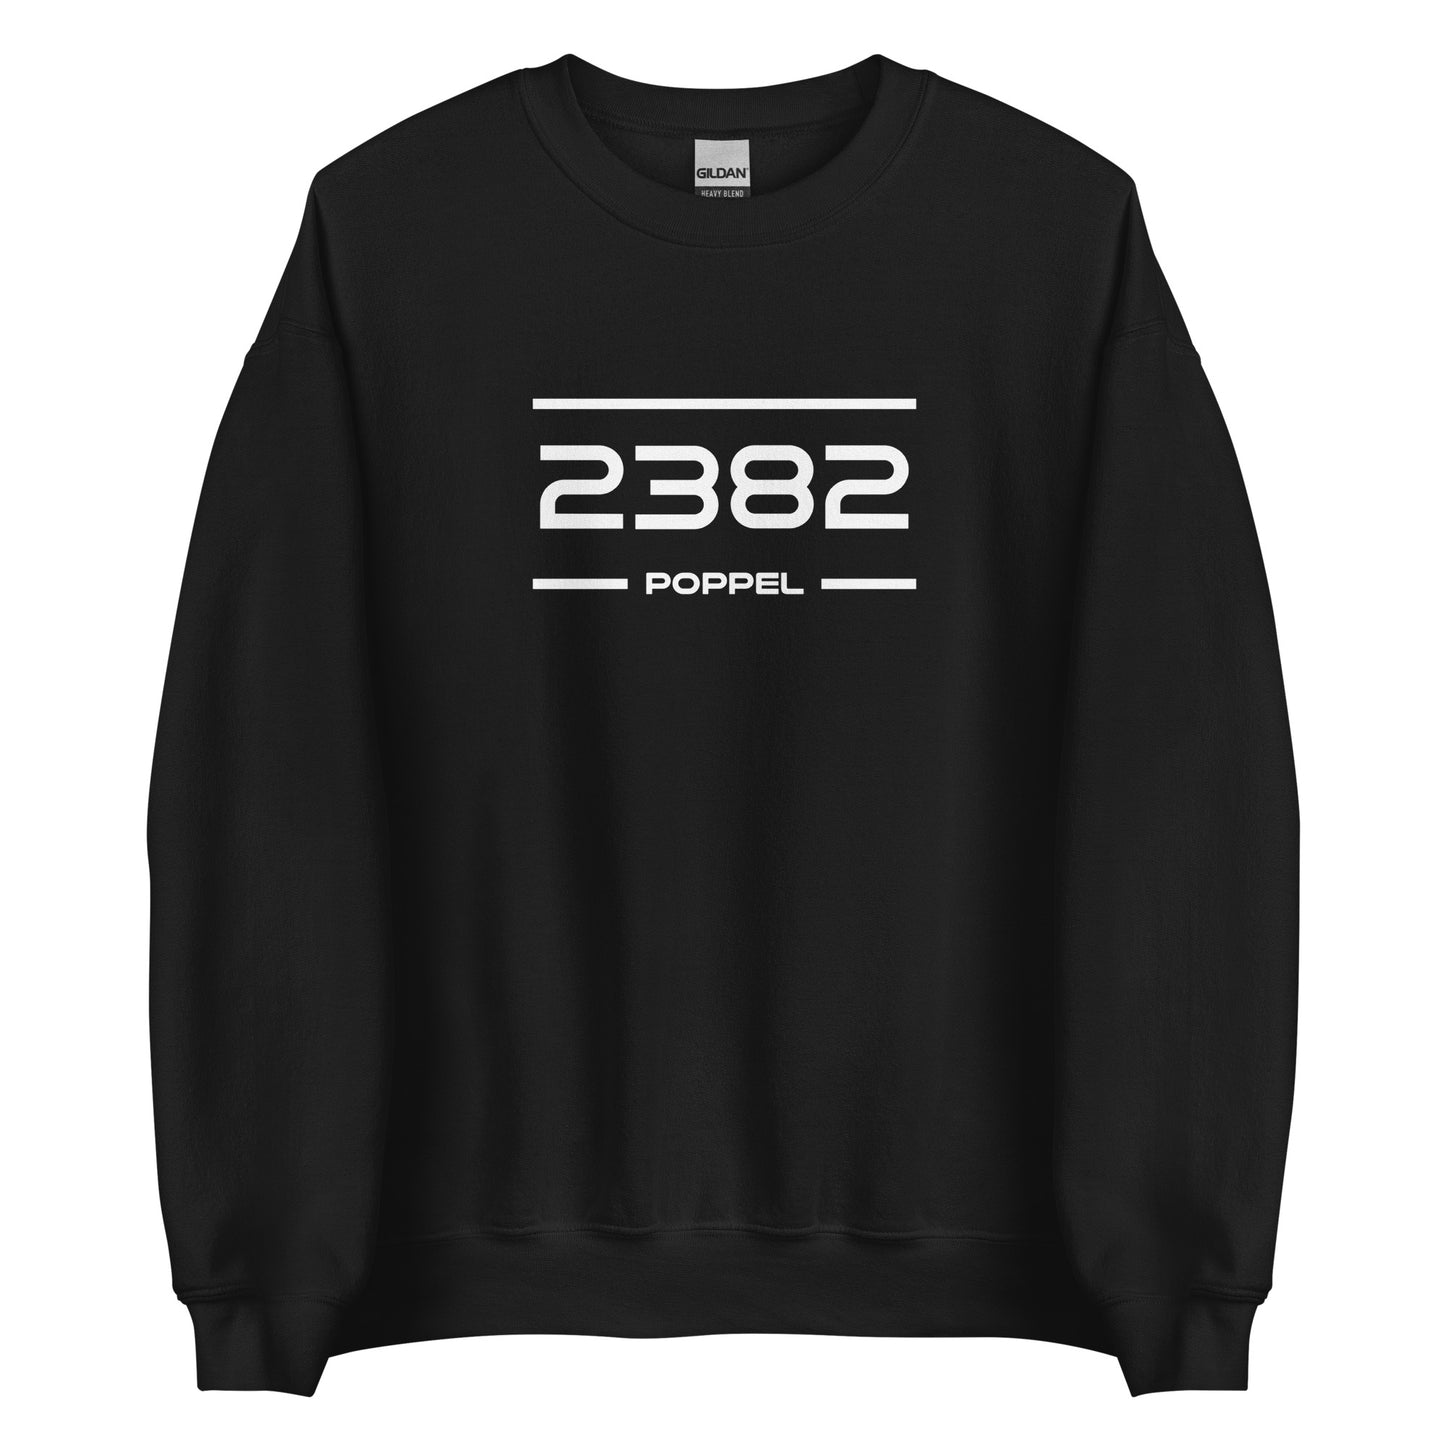 Sweater - 2382 - Poppel (M/V)